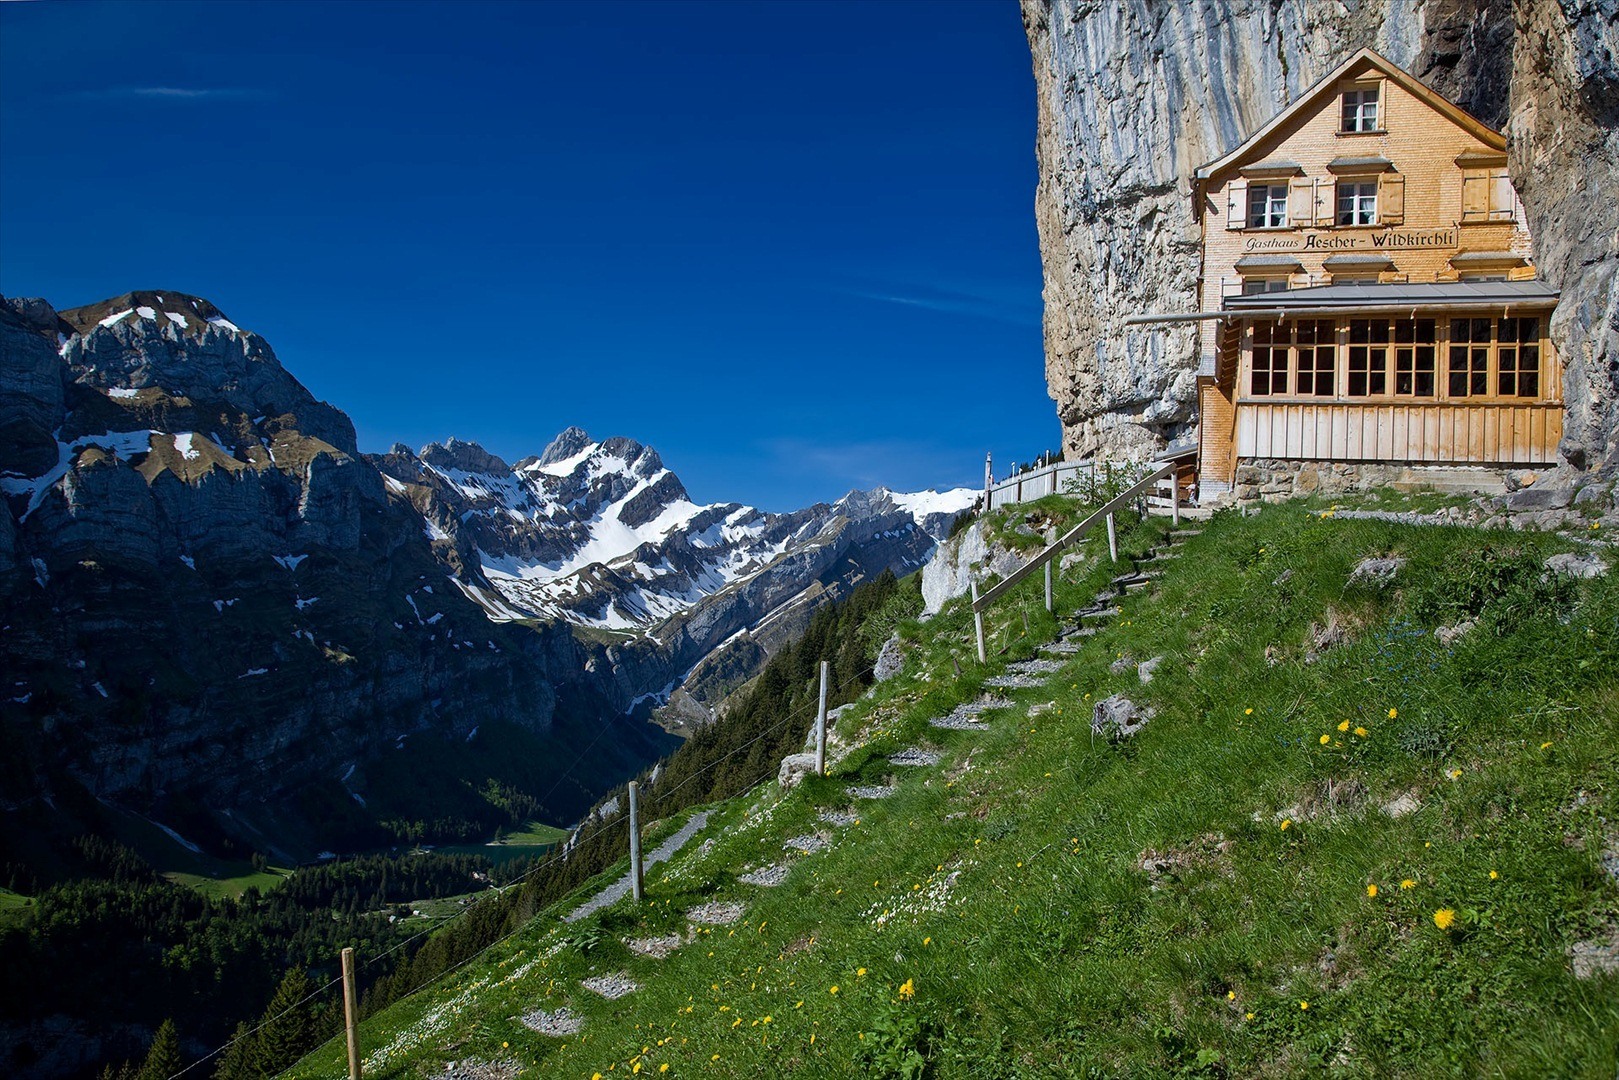 Aescher Hotel In Appenzellerland, Switzerland4